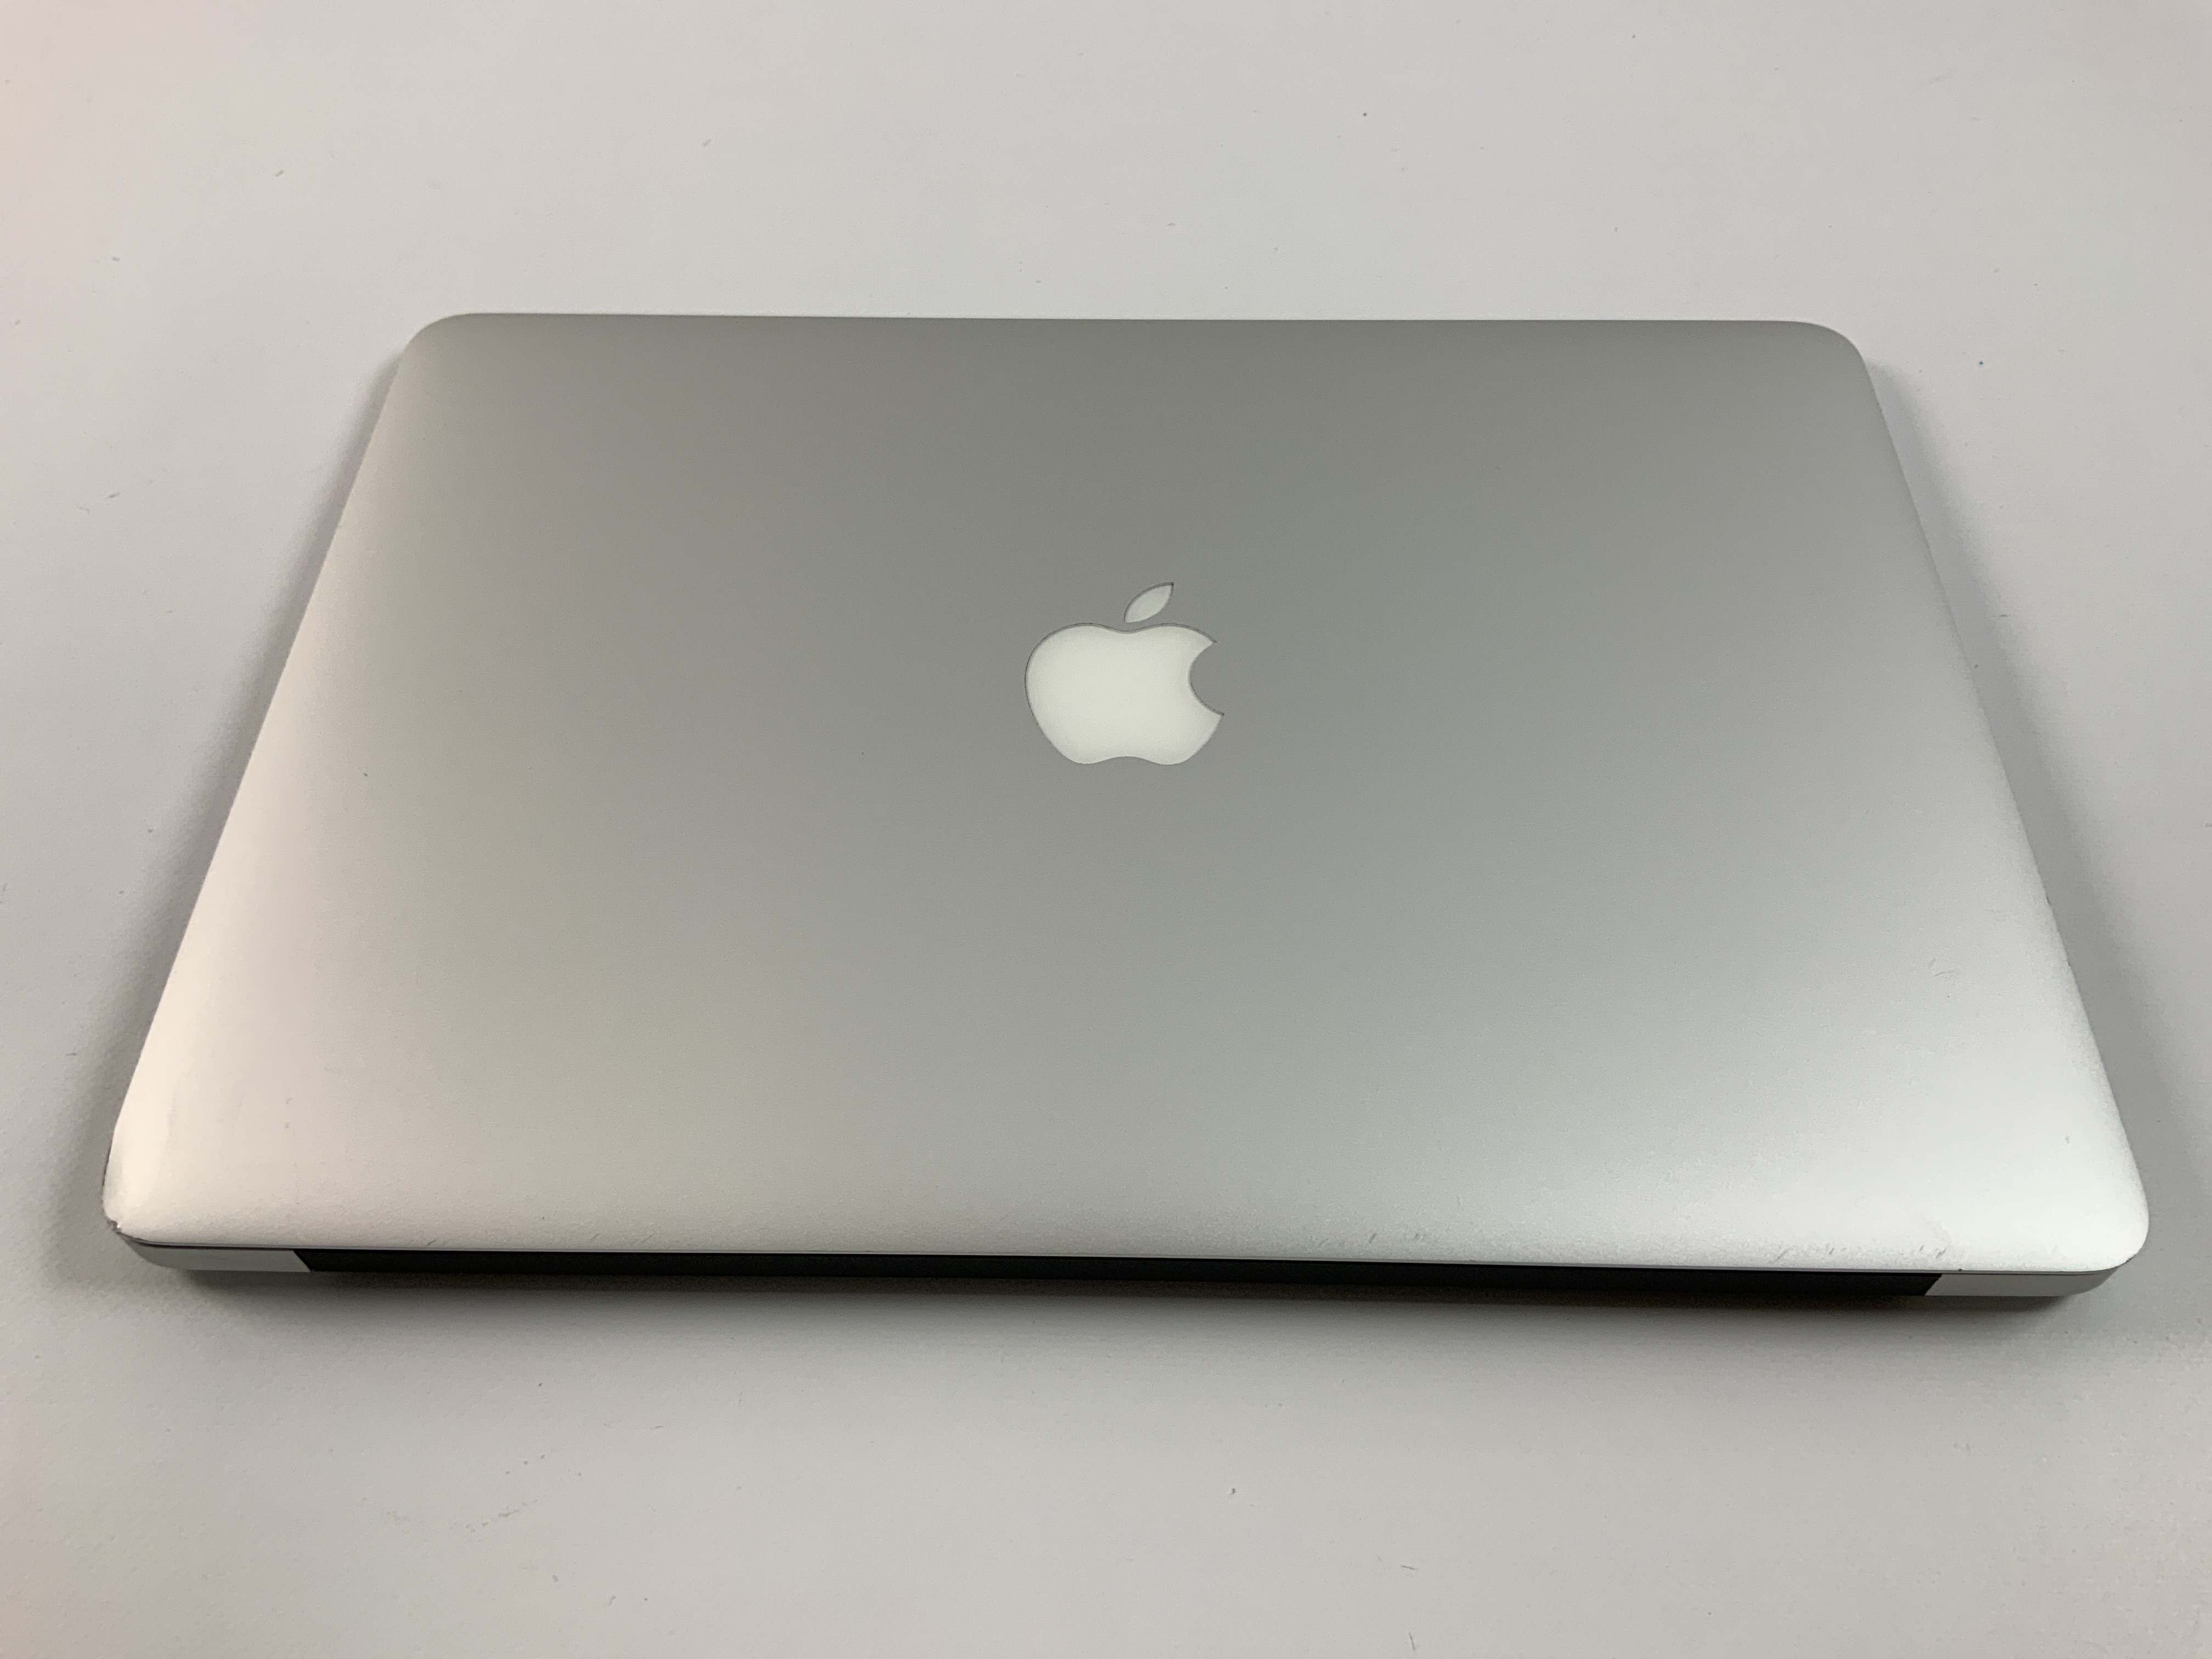 MacBook Air 13" Mid 2017 (Intel Core i5 1.8 GHz 8 GB RAM 256 GB SSD), Intel Core i5 1.8 GHz, 8 GB RAM, 256 GB SSD, image 2